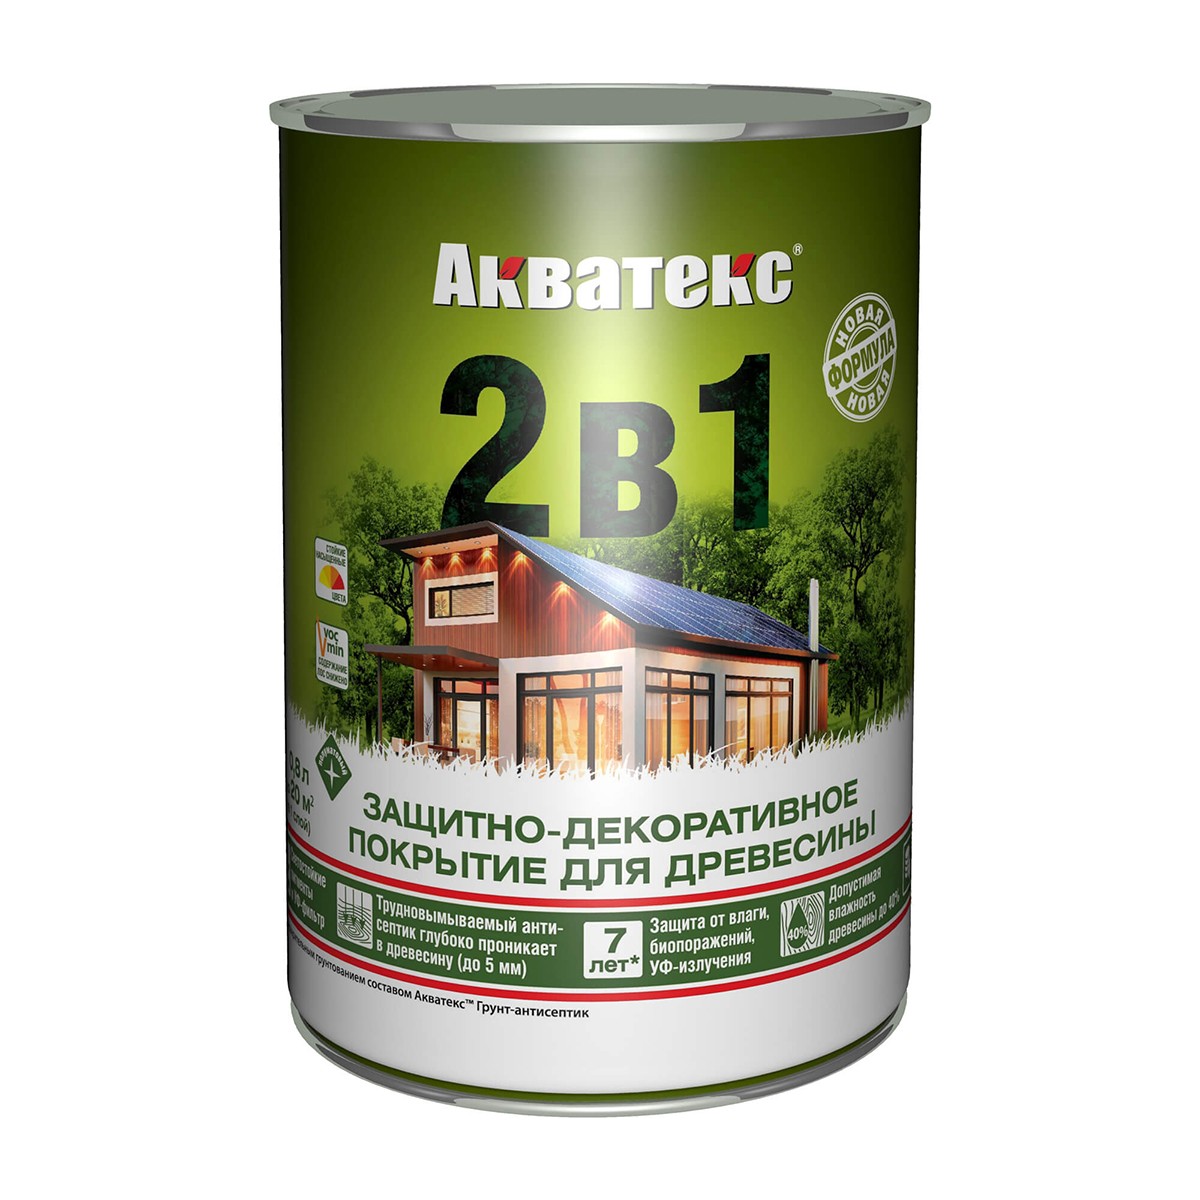 Акватекс 2 в 1 защитно-декоративное покрытие для древесины, Груша 0,8л - фото - 1